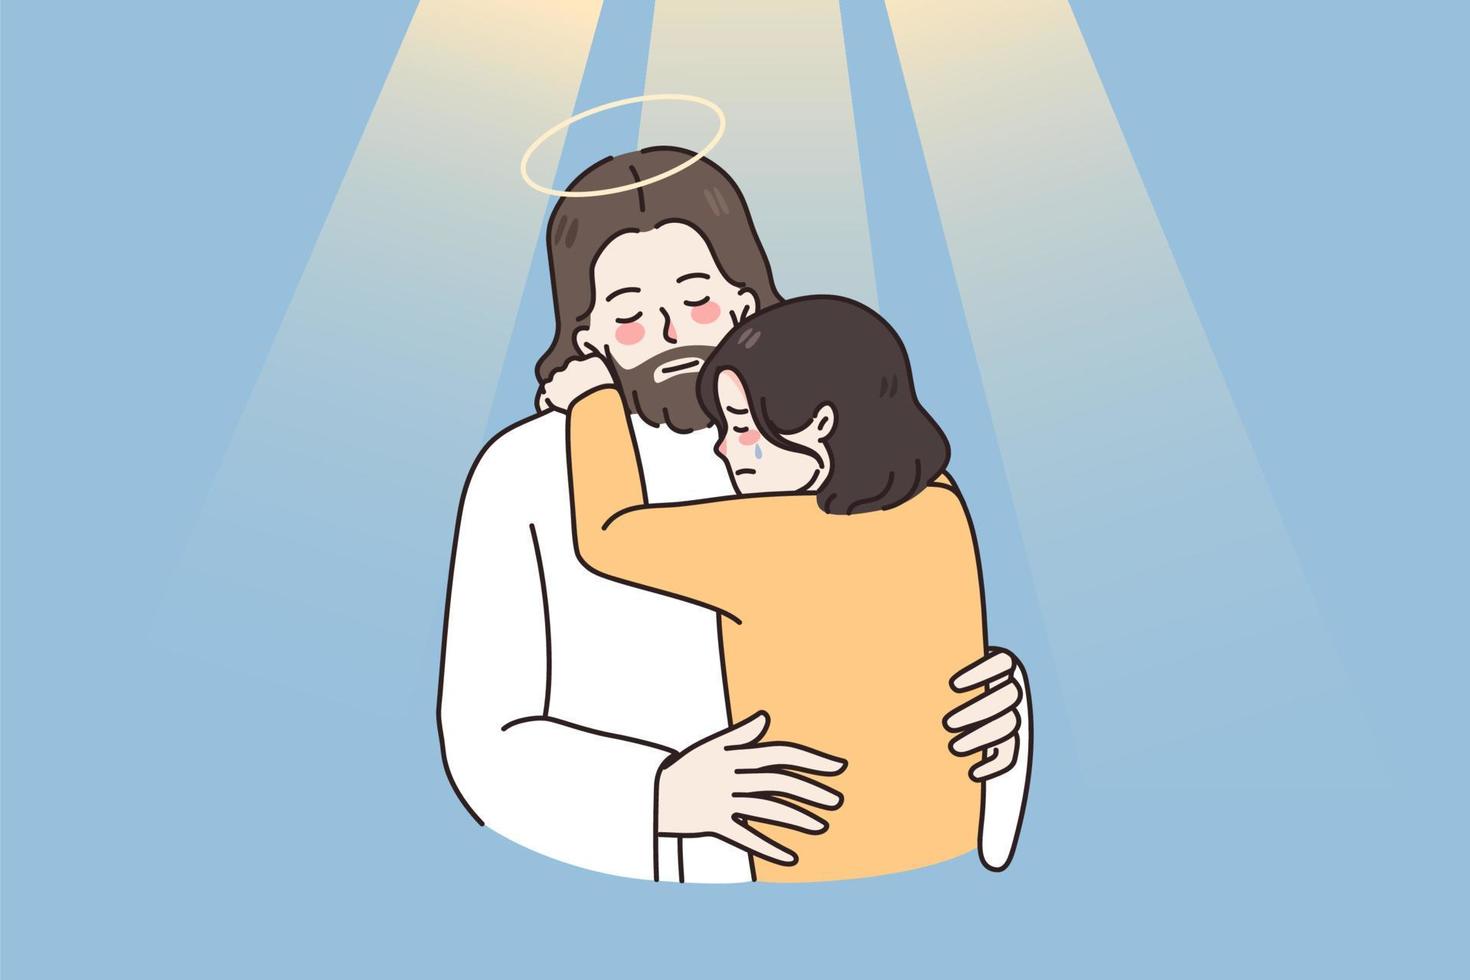 Jesus abraço conforto chorando menina criança sentir solidário mostrar amor e Cuidado. Cristo abraço Apoio, suporte infeliz triste criança angustiado com problemas. fé e religião. crente dentro Deus. vetor ilustração.